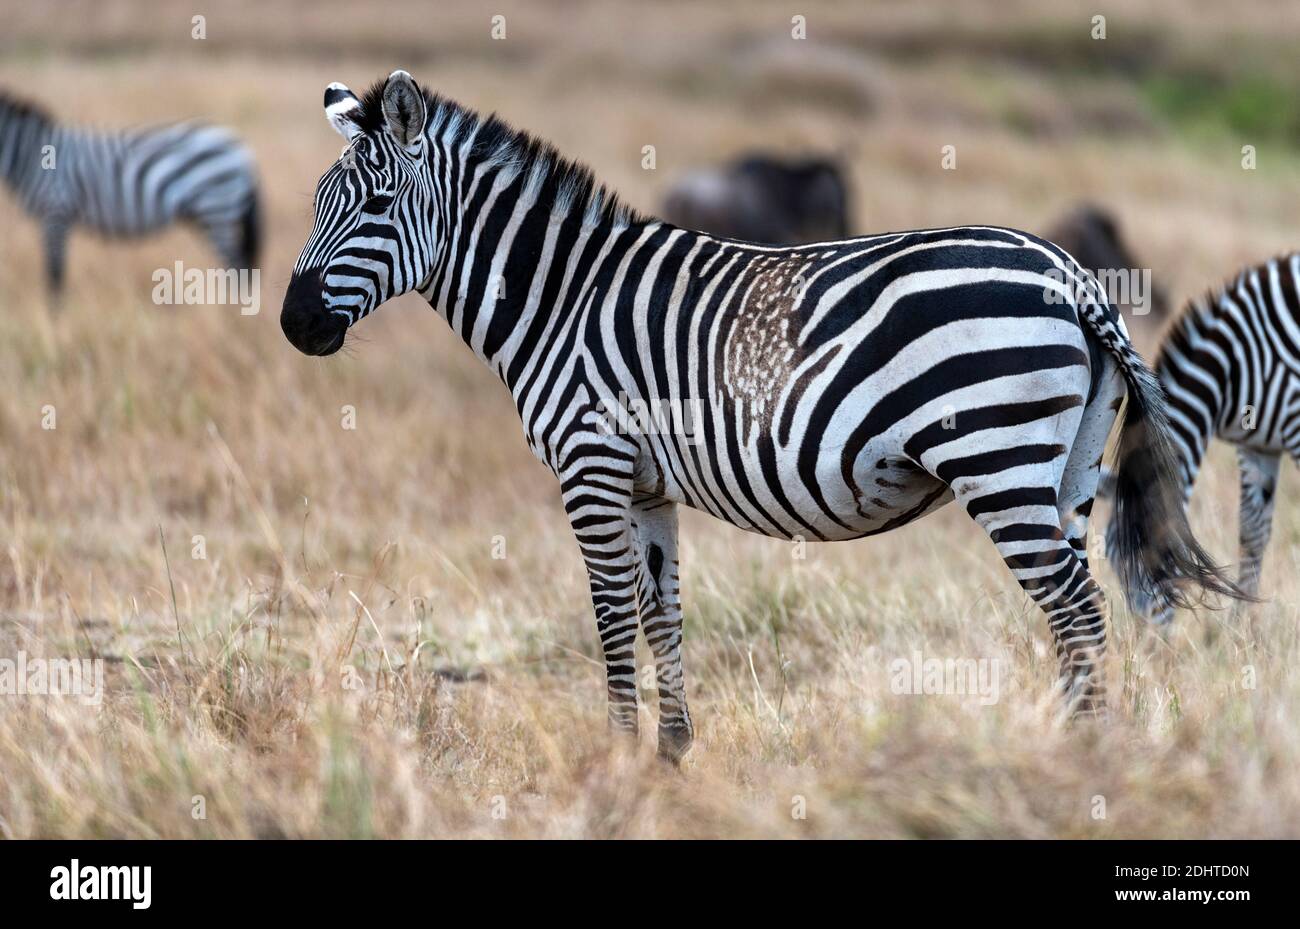 Atypican strié patron sur un zèbre (Equus quagga), peut-être causé par une mutation. Maasai Mara, Kenya. Banque D'Images